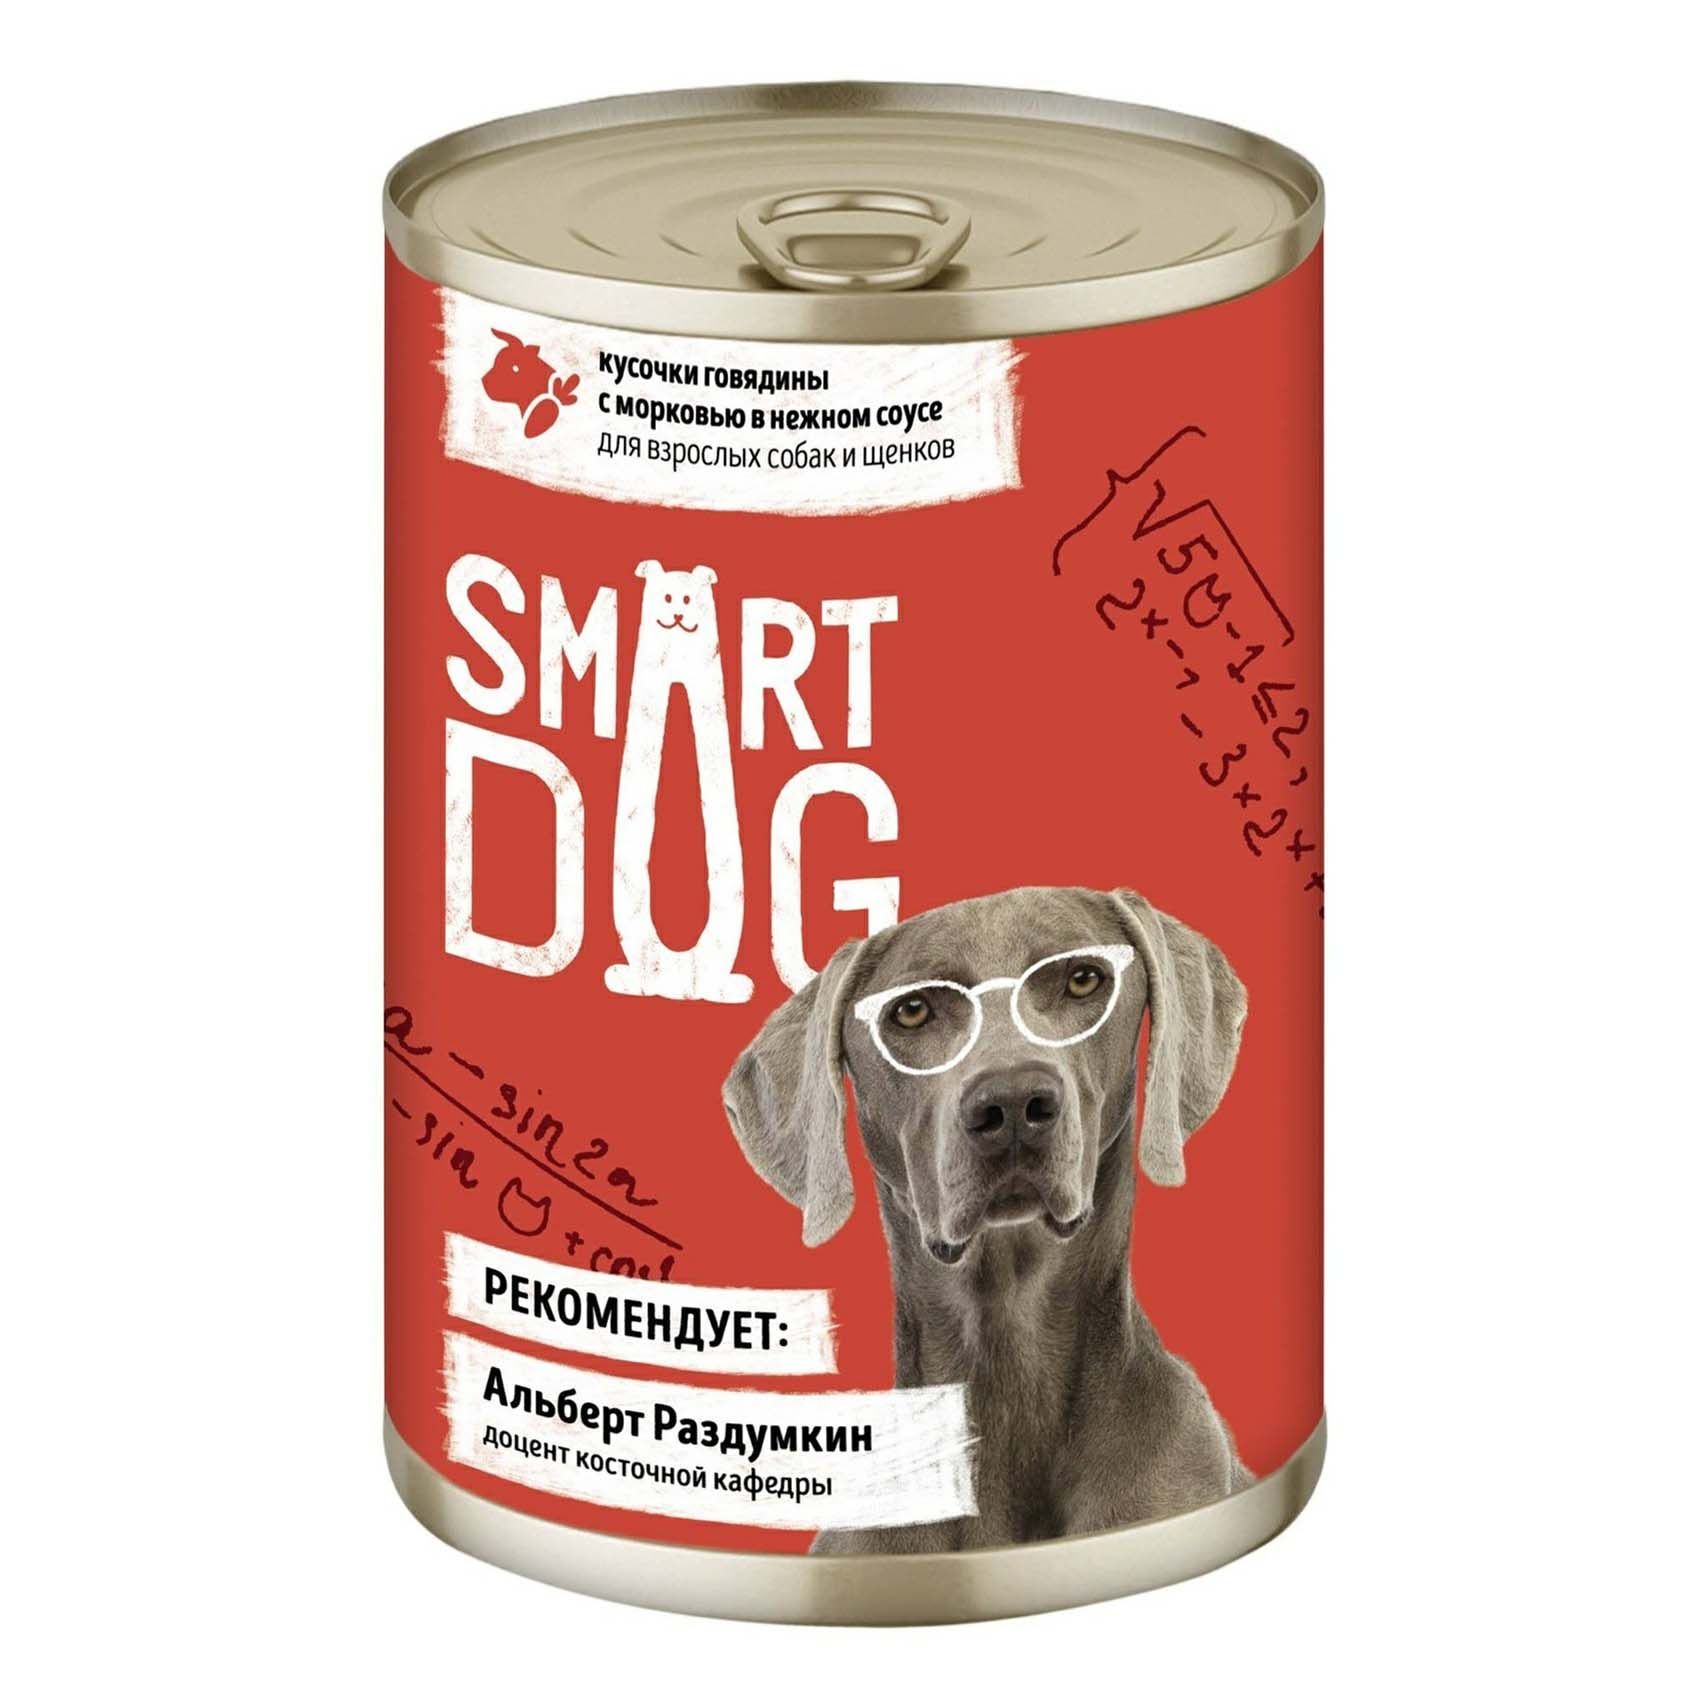 Влажный корм Smart Dog говядина с морковью в нежном соусе для взрослых собак и щенков 850г